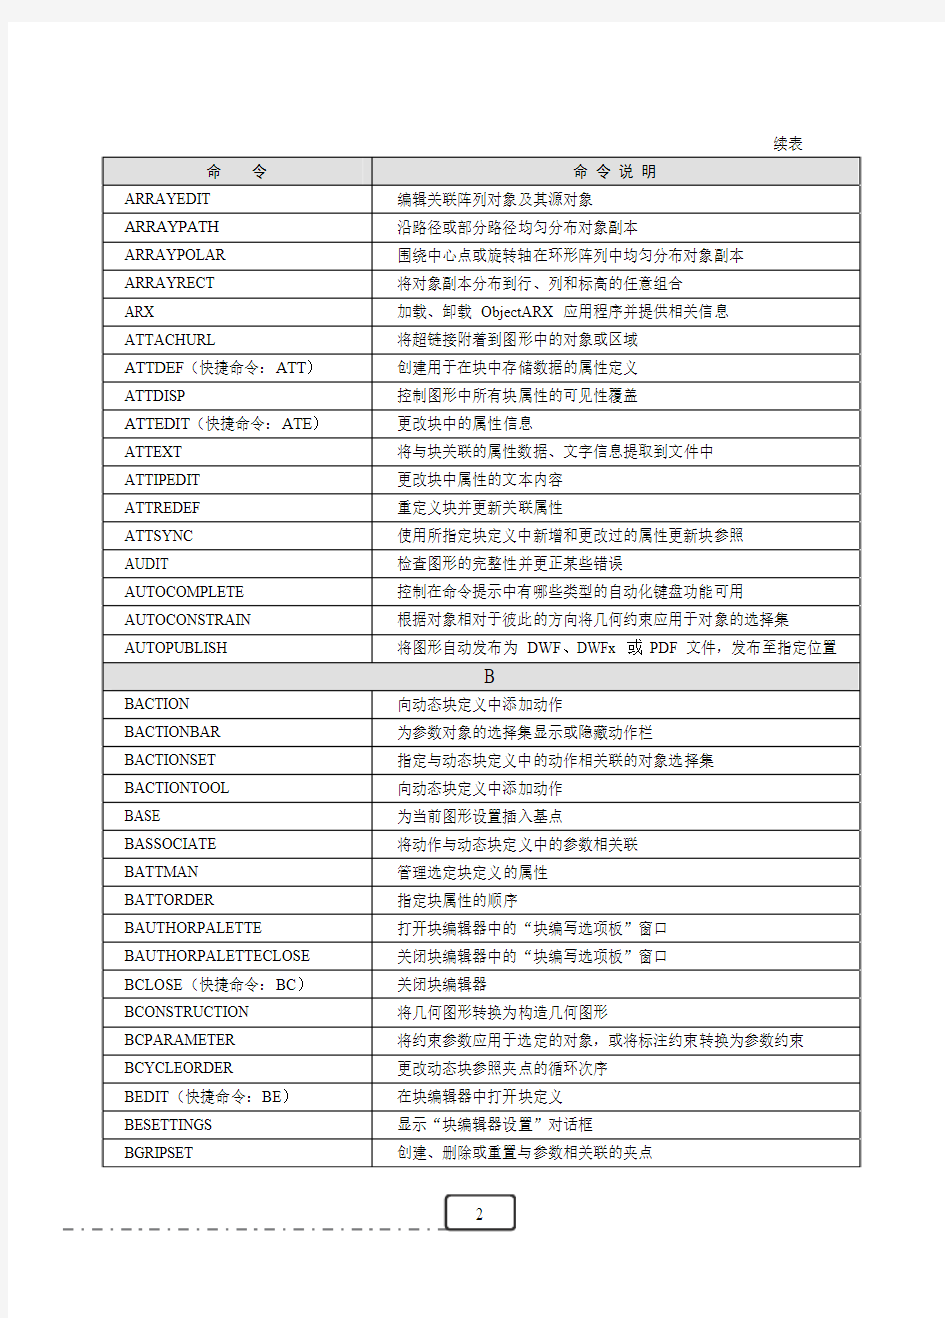 AutoCAD命令关键词索引表